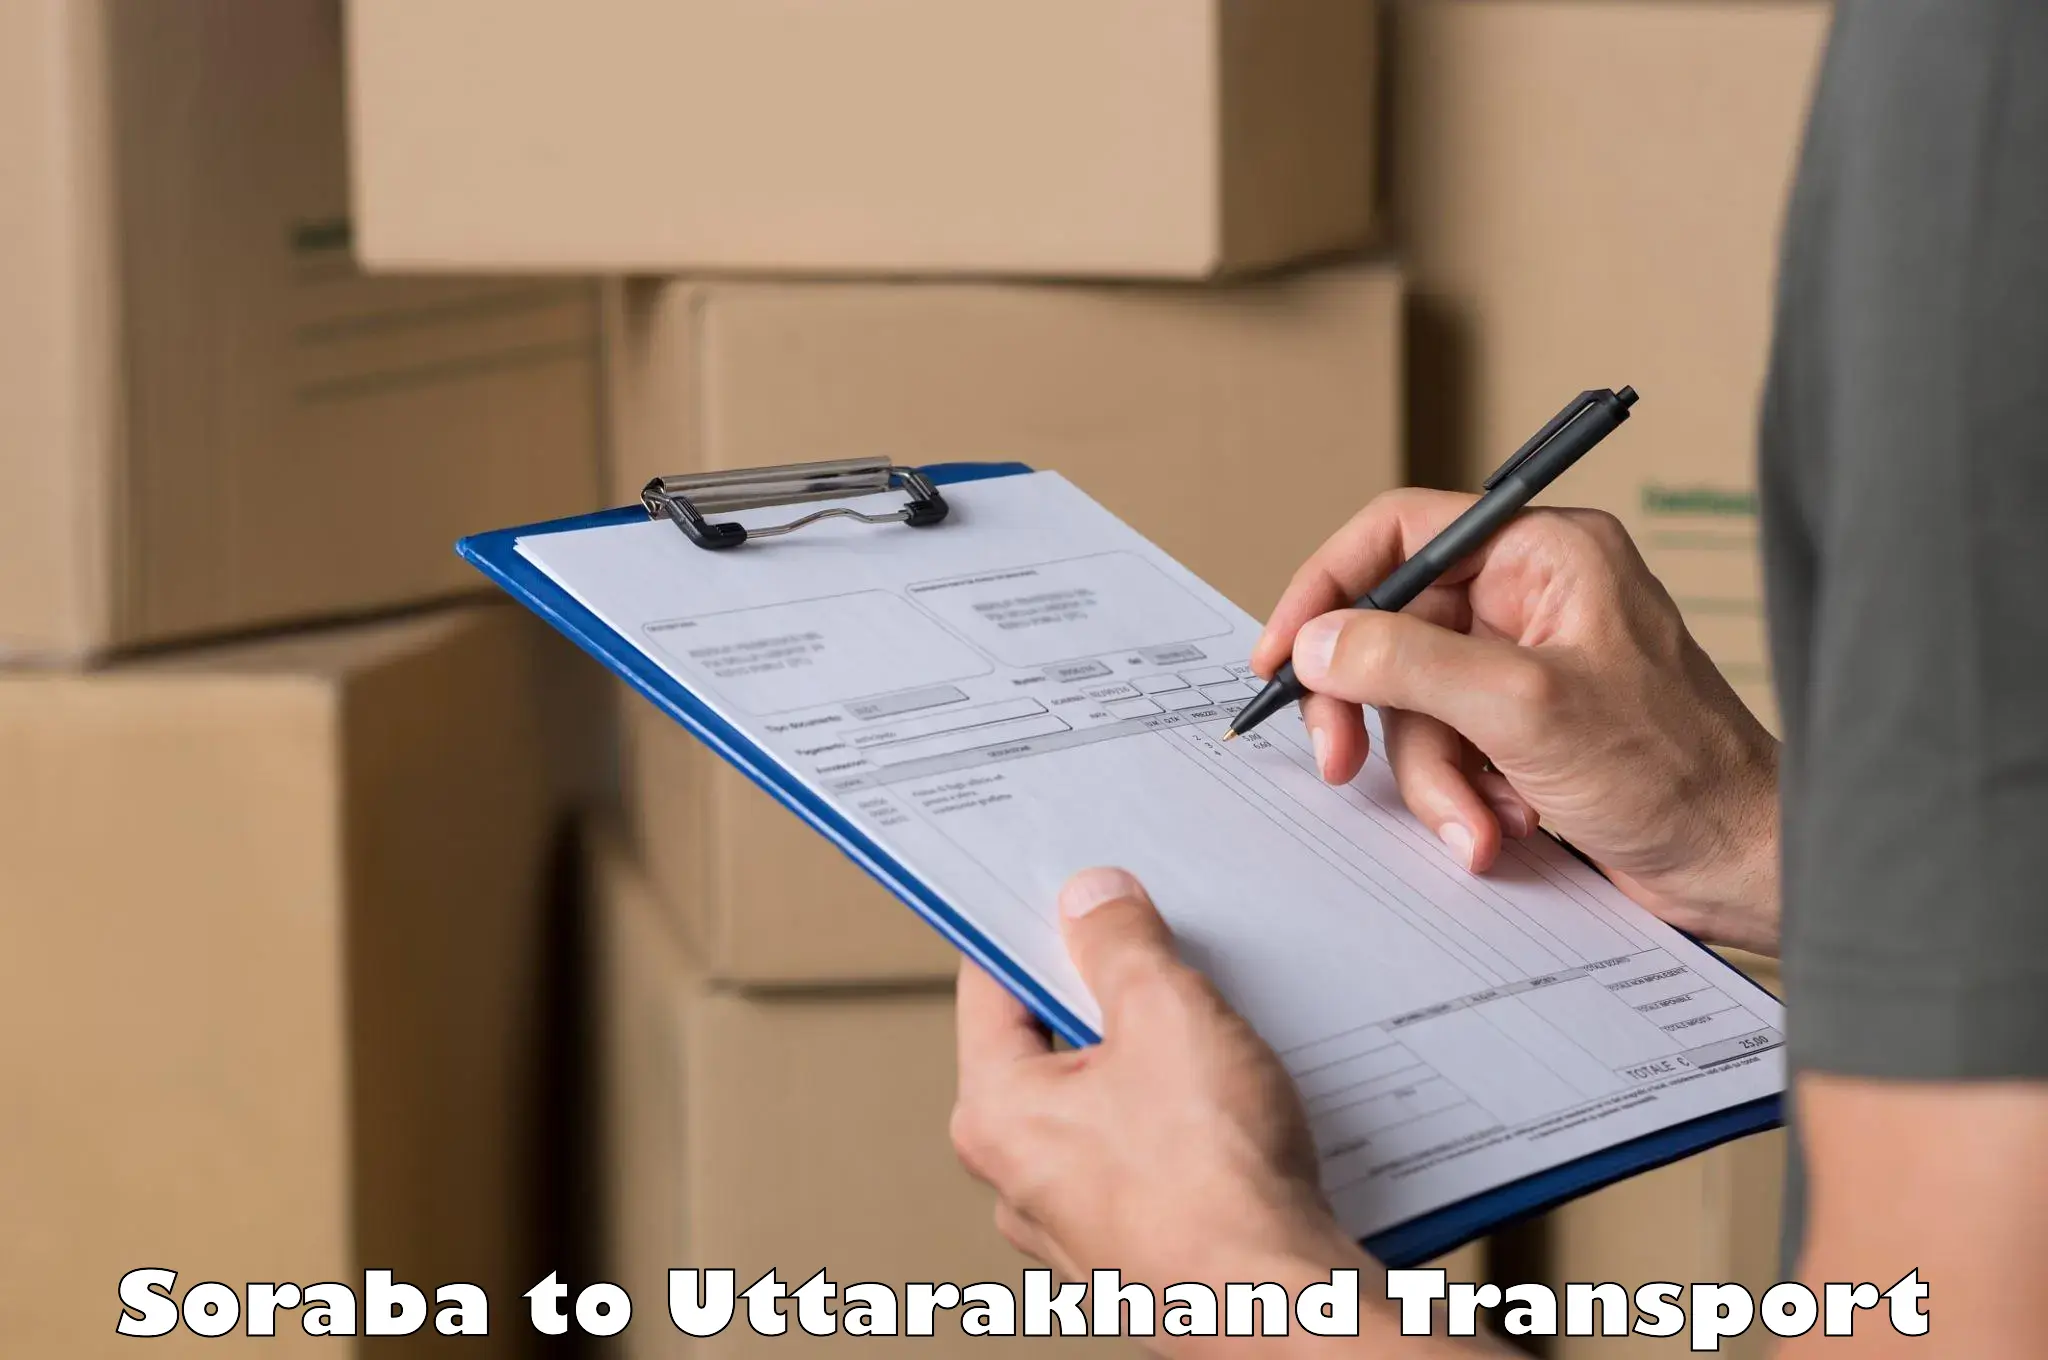 Commercial transport service Soraba to Uttarakhand